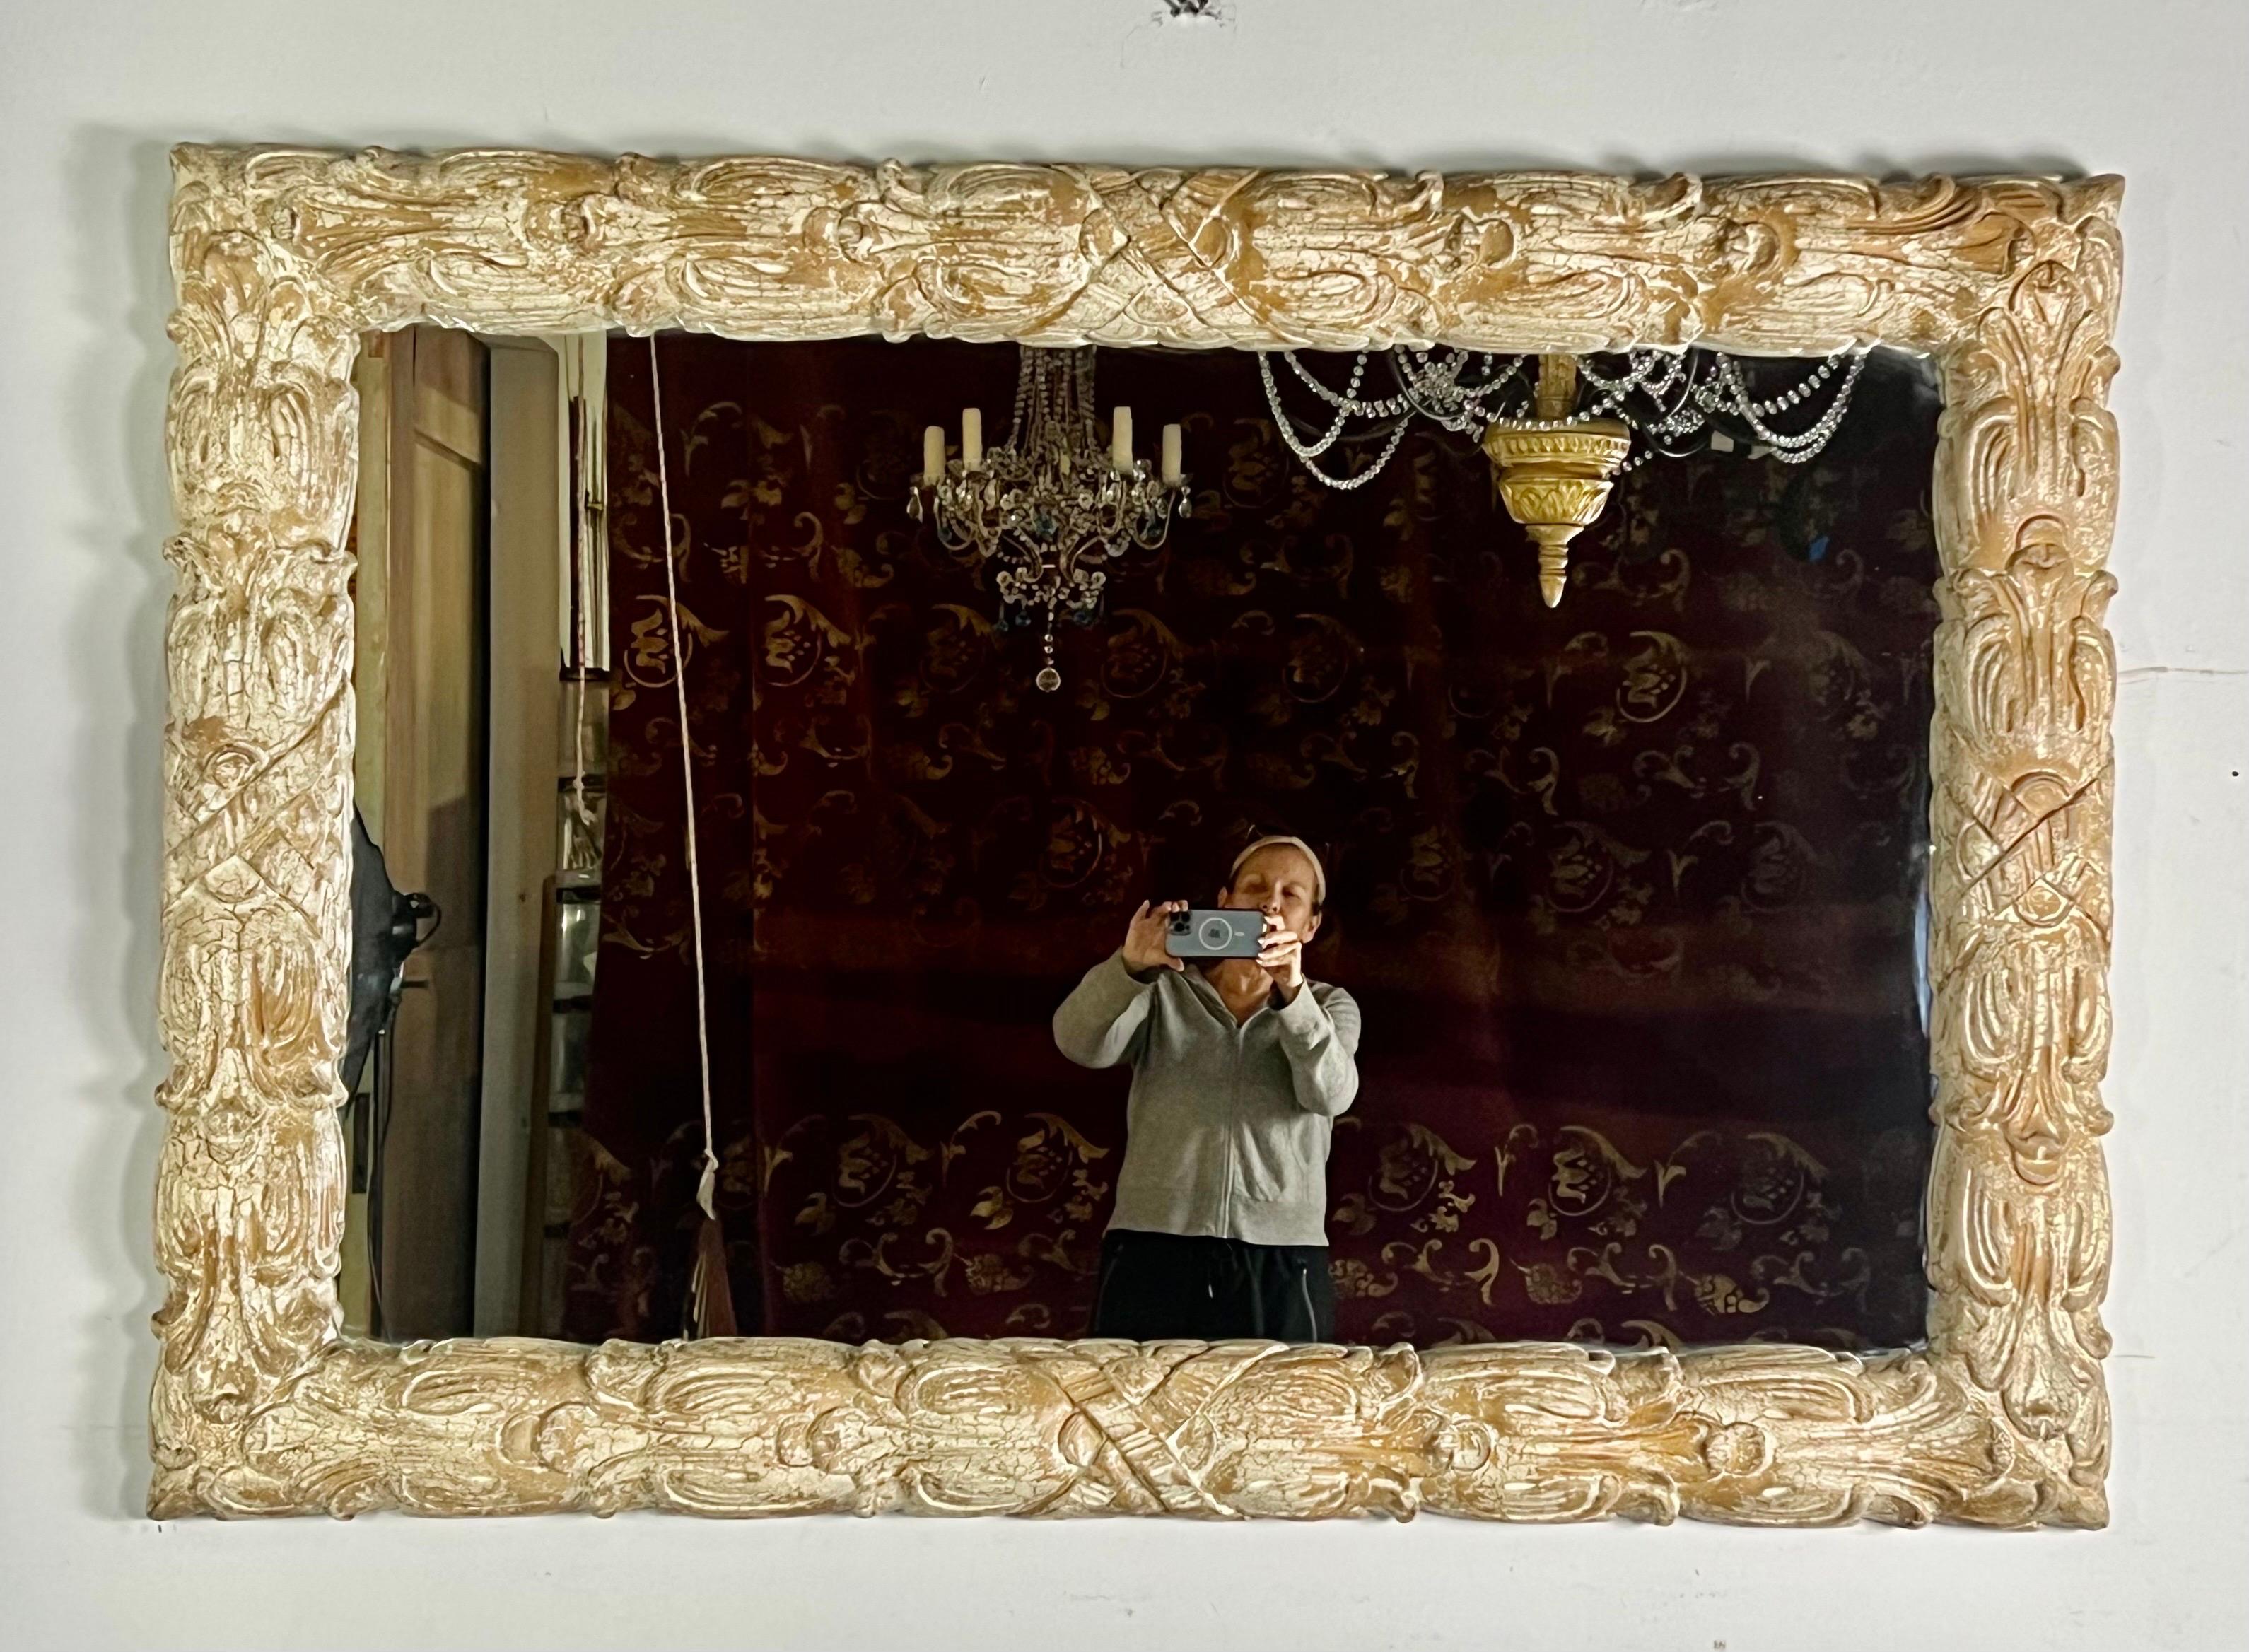 Großer rechteckiger Spiegel im französischen Stil, der vertikal oder horizontal angebracht werden kann.  Es hat eine speziell angefertigte Craquelé-Beschichtung in einer cremefarbenen Hafermehlfarbe, die Mitte des 20. Jahrhunderts sehr beliebt war.